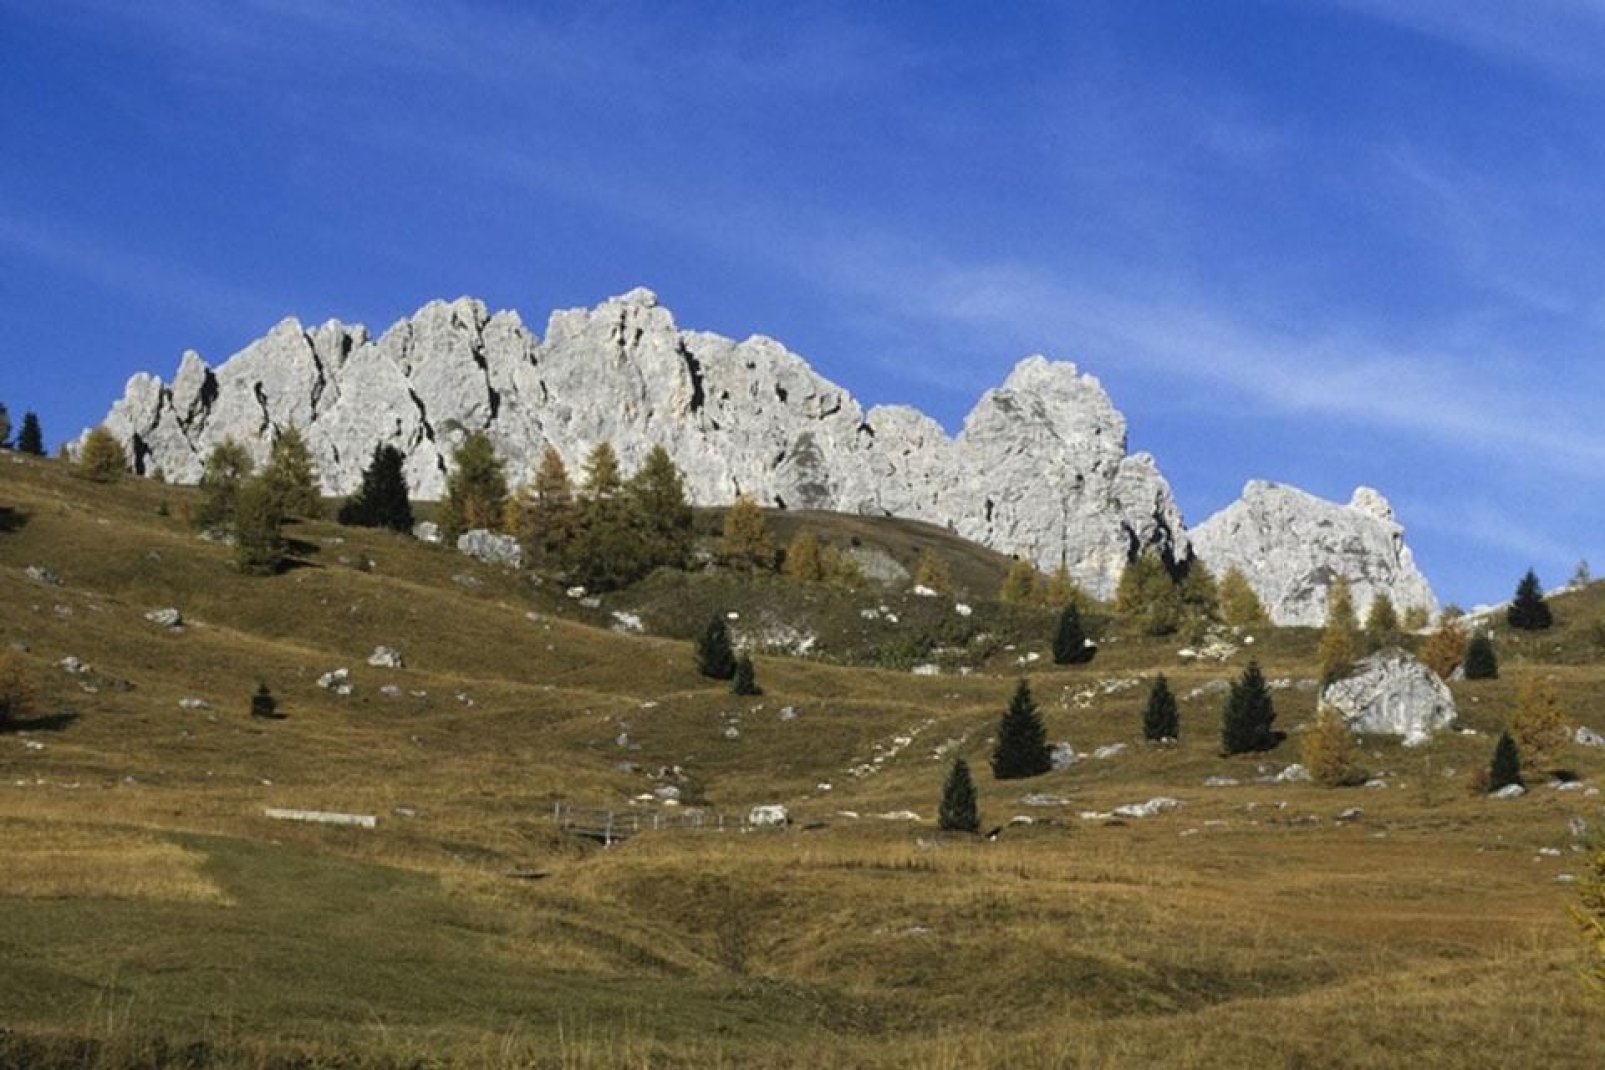 Bolzano está situado en un valle rodeado de magníficas cumbres alpinas.